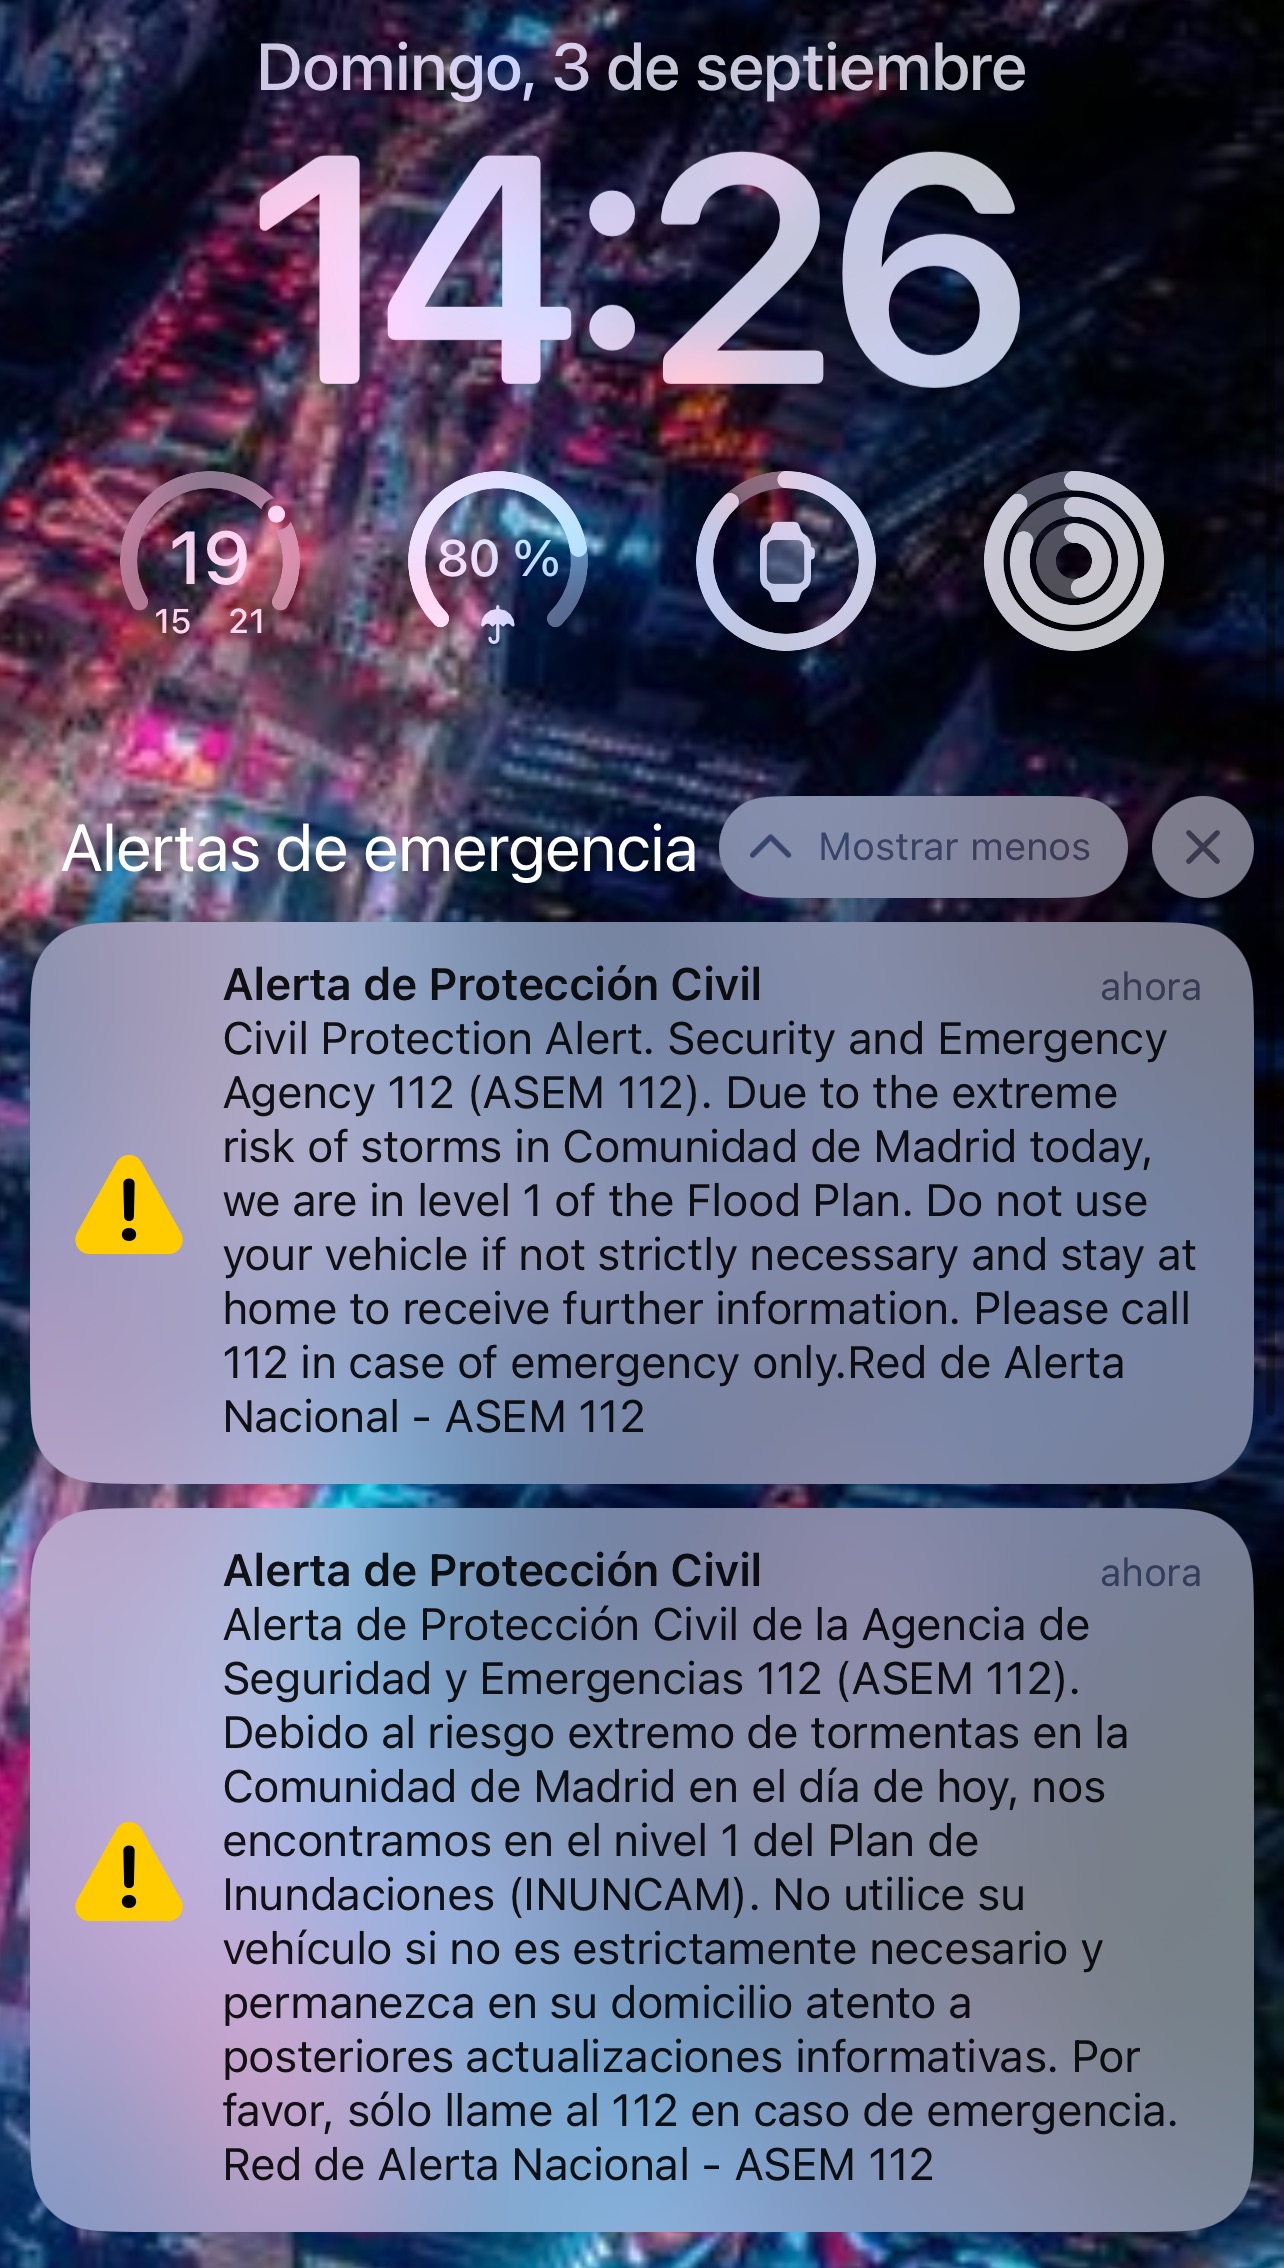 Alerta de Protección Civil enviada masivamente a todos los smartphones en la Comunidad de Madrid y Toledo